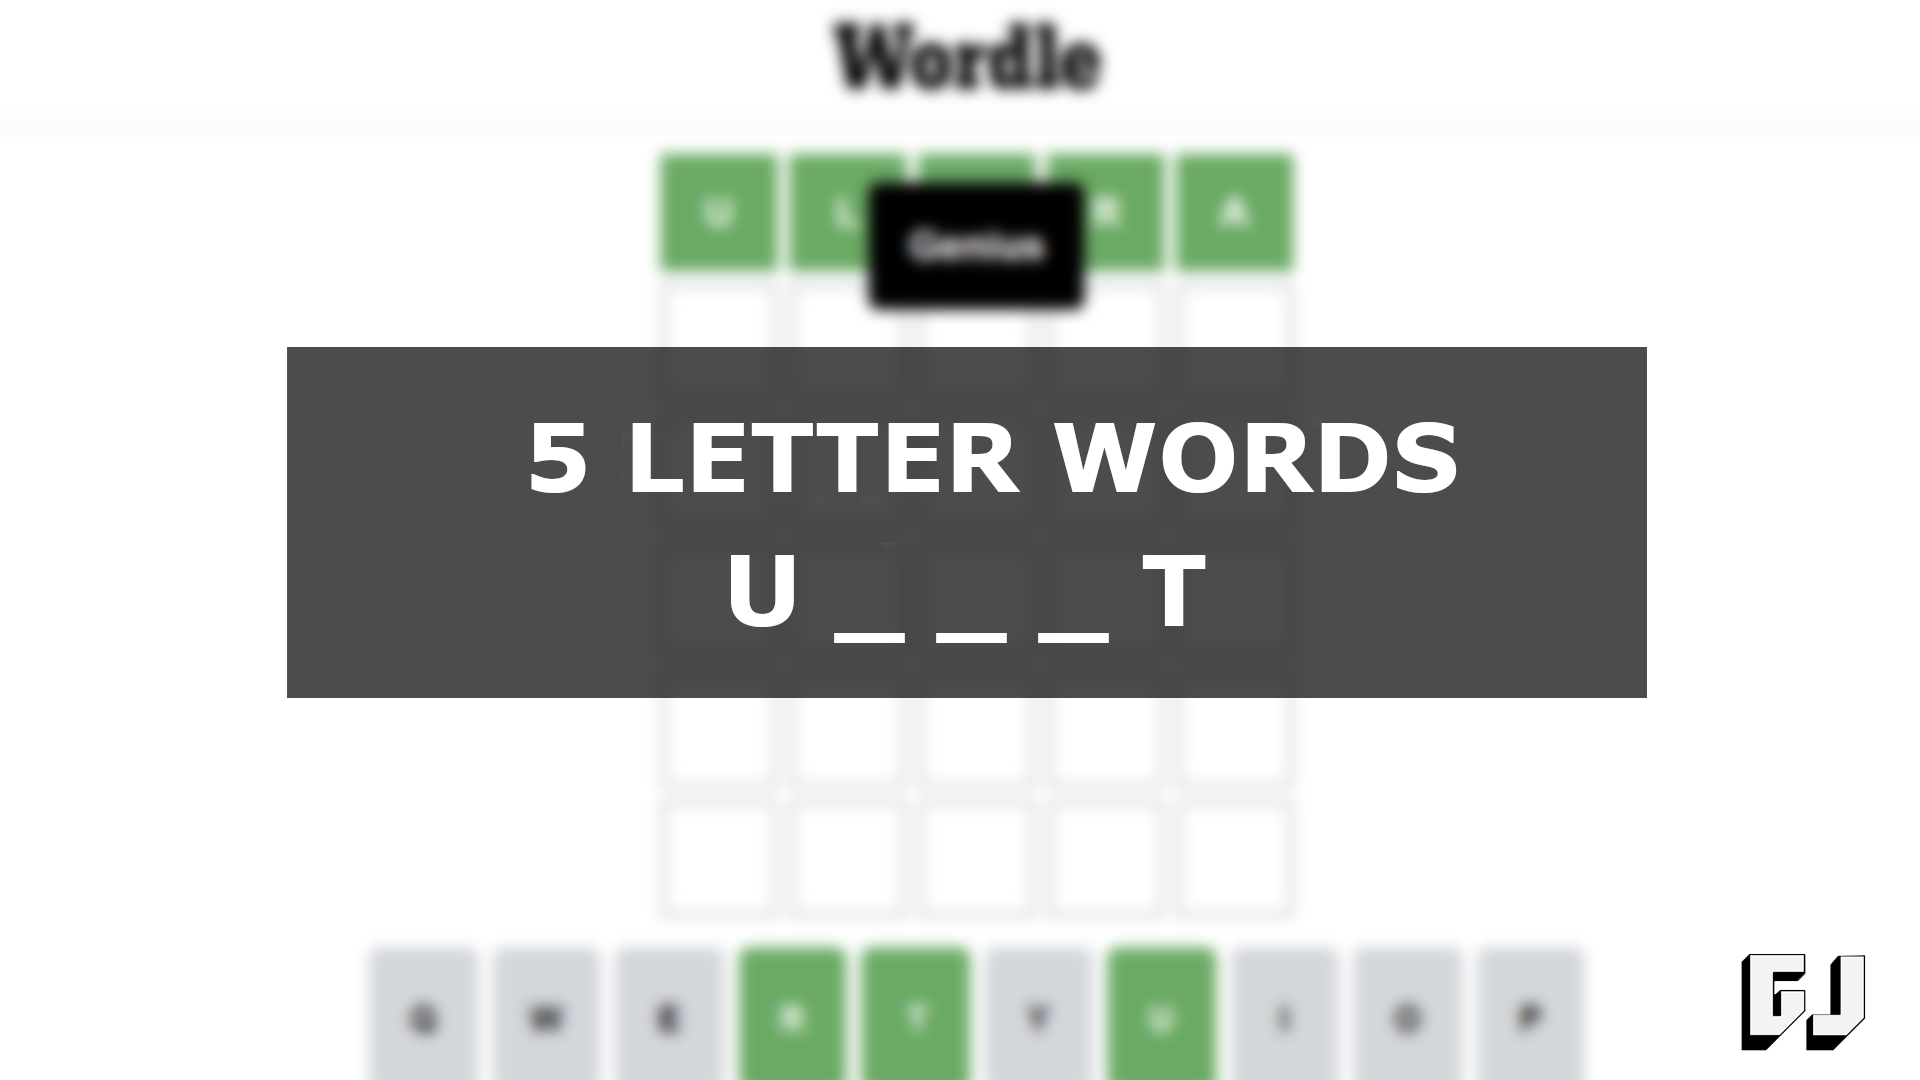 Слово 5 букв вторая е последняя л. Игра 5 букв тинькофф. Слова в тинькофф игра. 5 Letter Words. Слова из пяти букв игра в тинькофф.